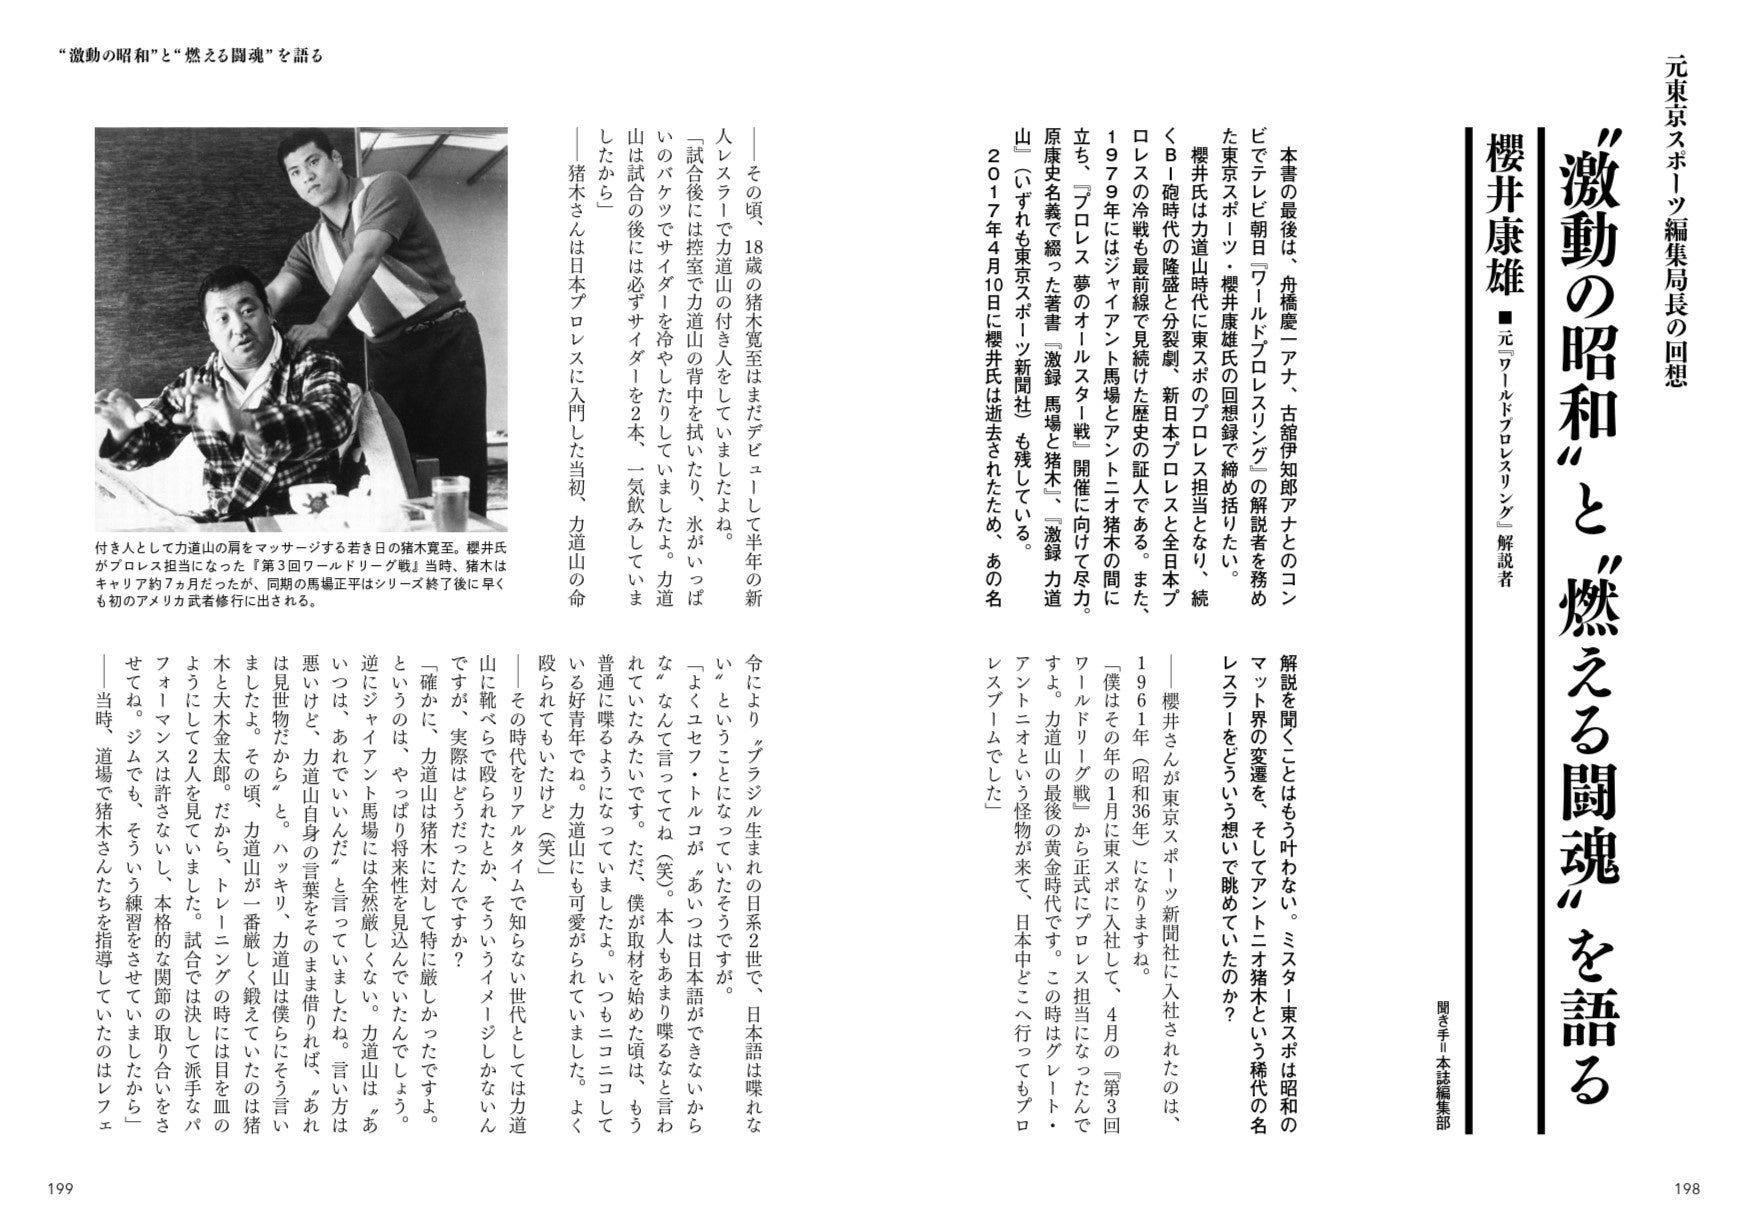 新日本プロレス中継の解説者を務めた元東京スポーツの櫻井康雄氏が猪木の歴史を語り尽くす